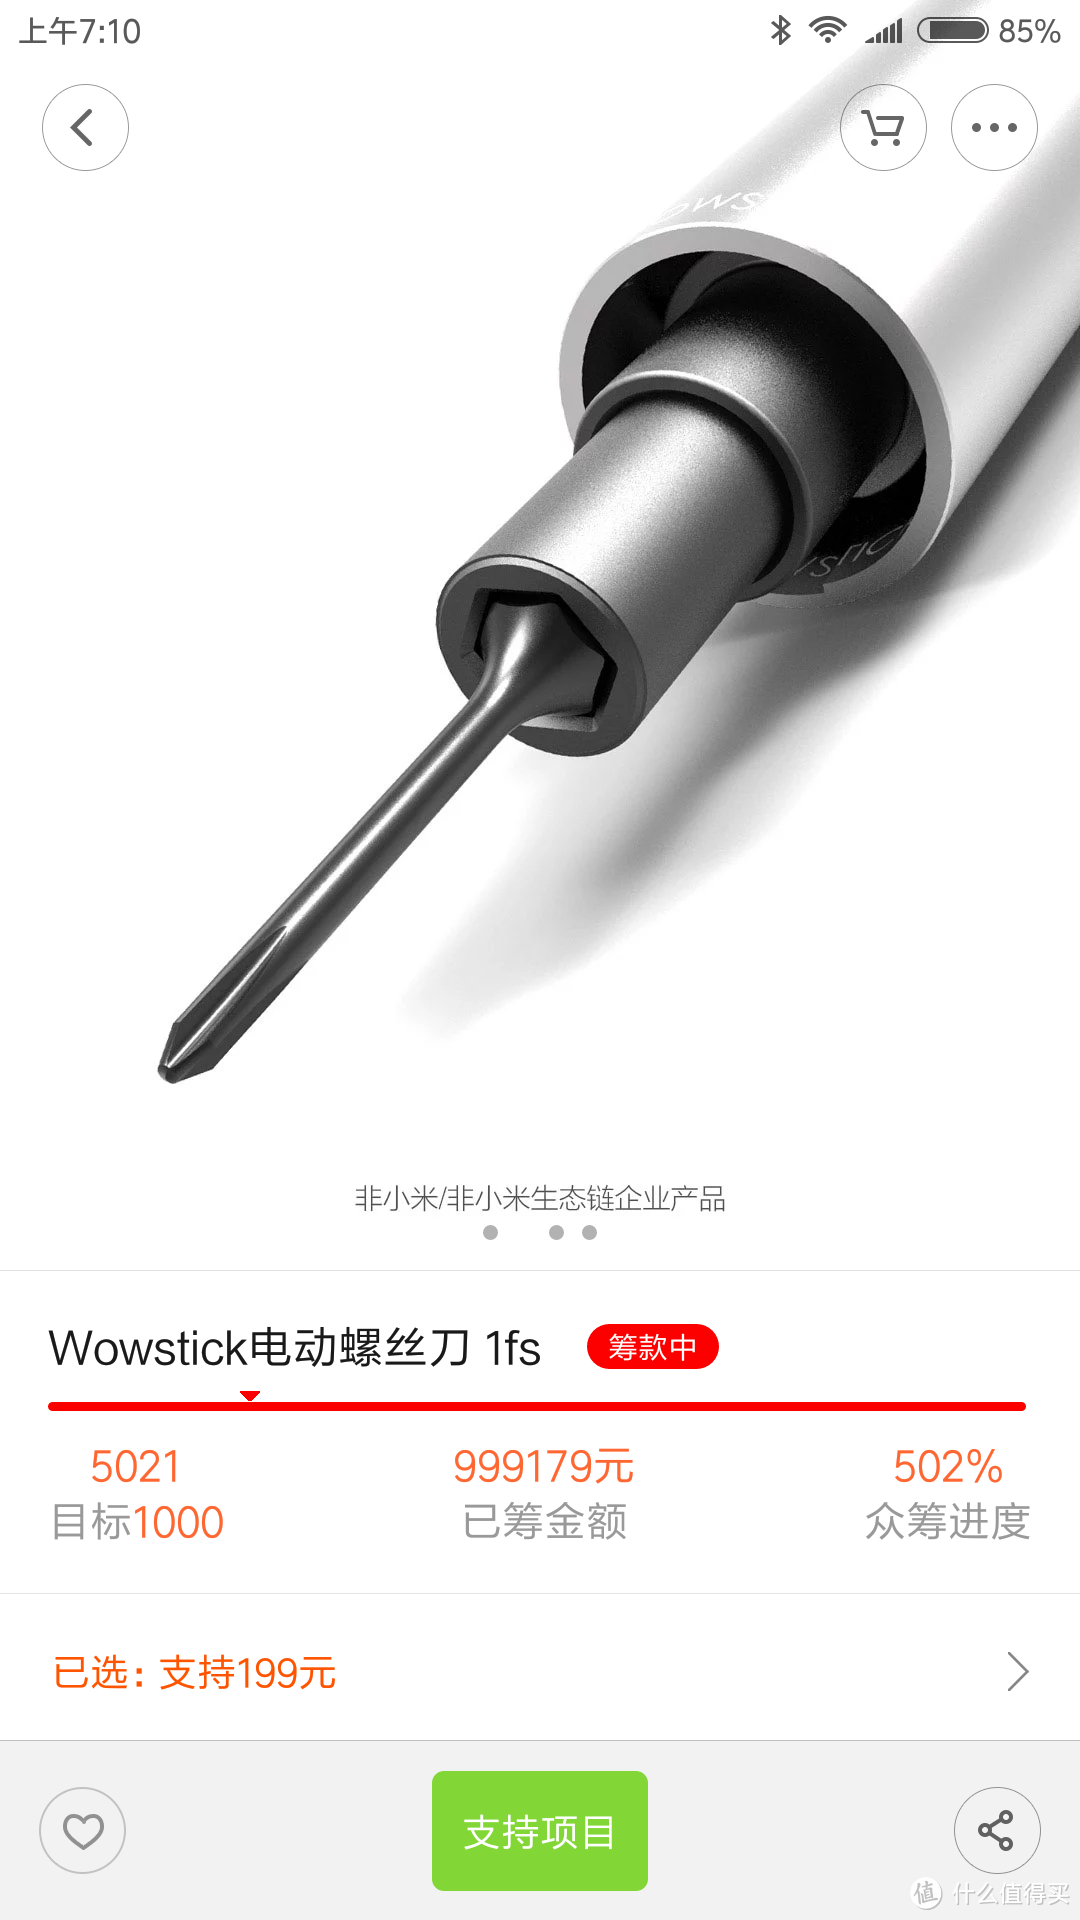 小米之家新众筹——wowstick 电动螺丝刀1fs 速评